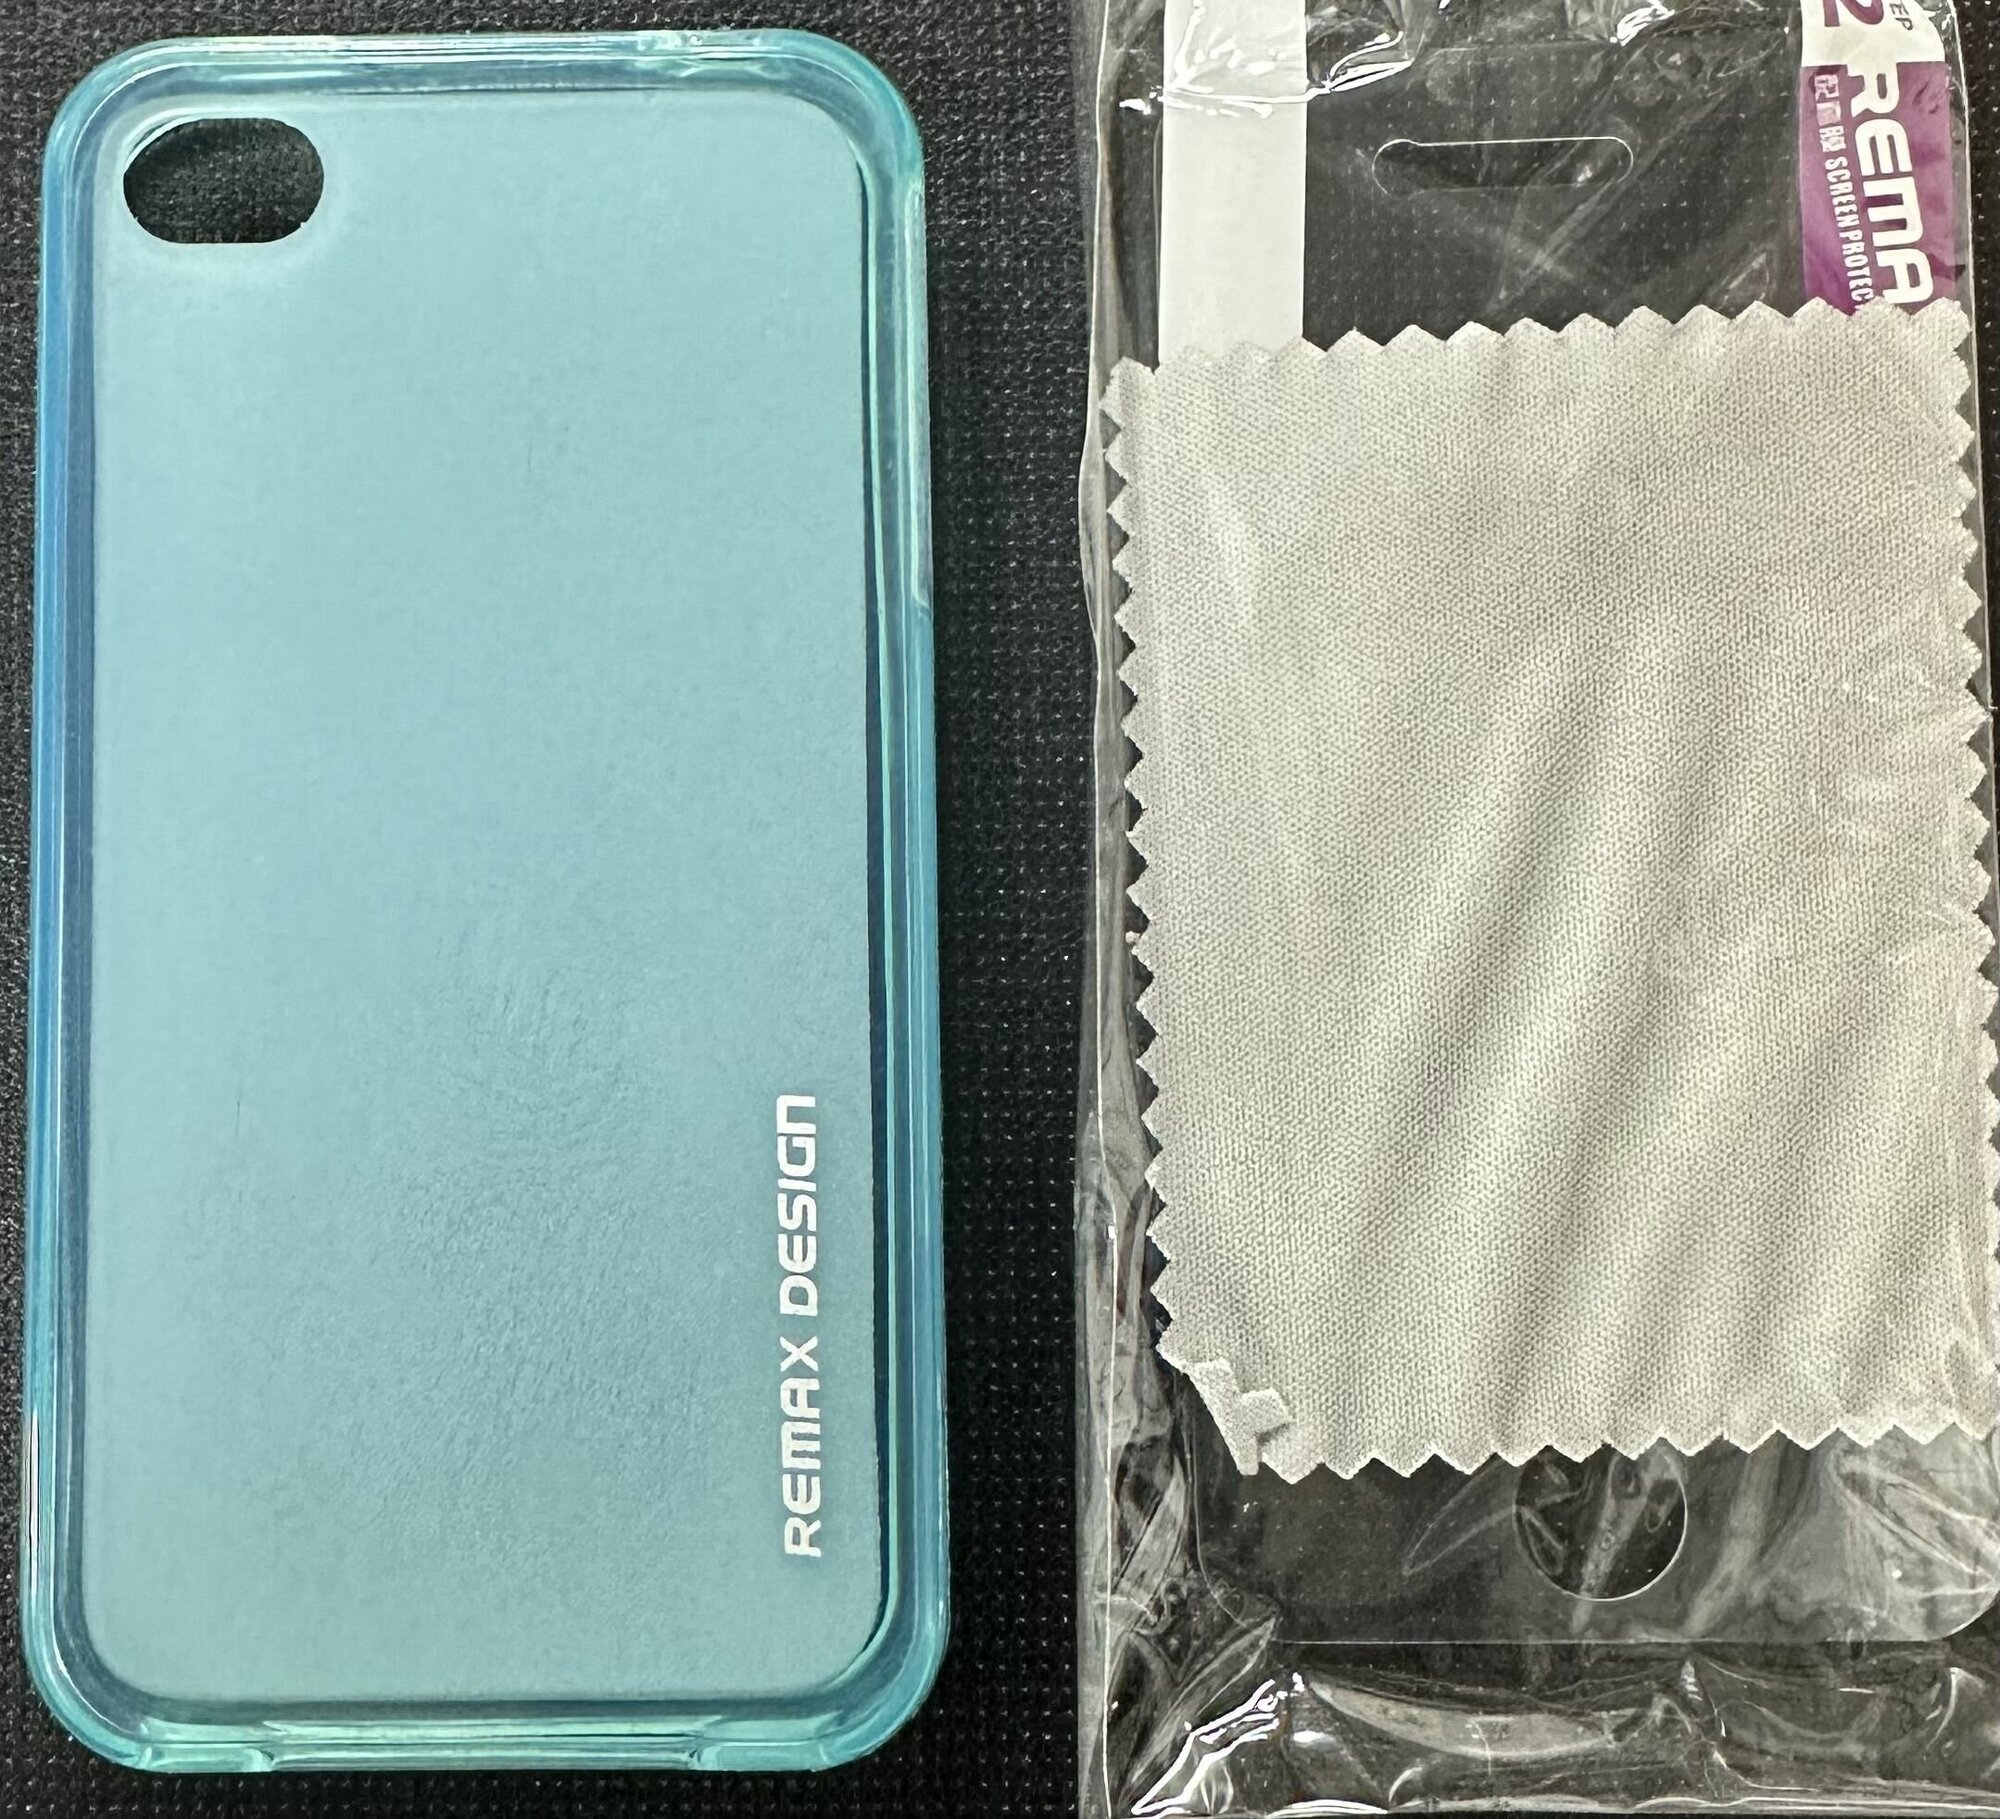 Чехол накладка силиконовая для iPhone 4S/iPhone 4G/iPhone 4, голубой-матовый+защитная пленка на экран в подарок